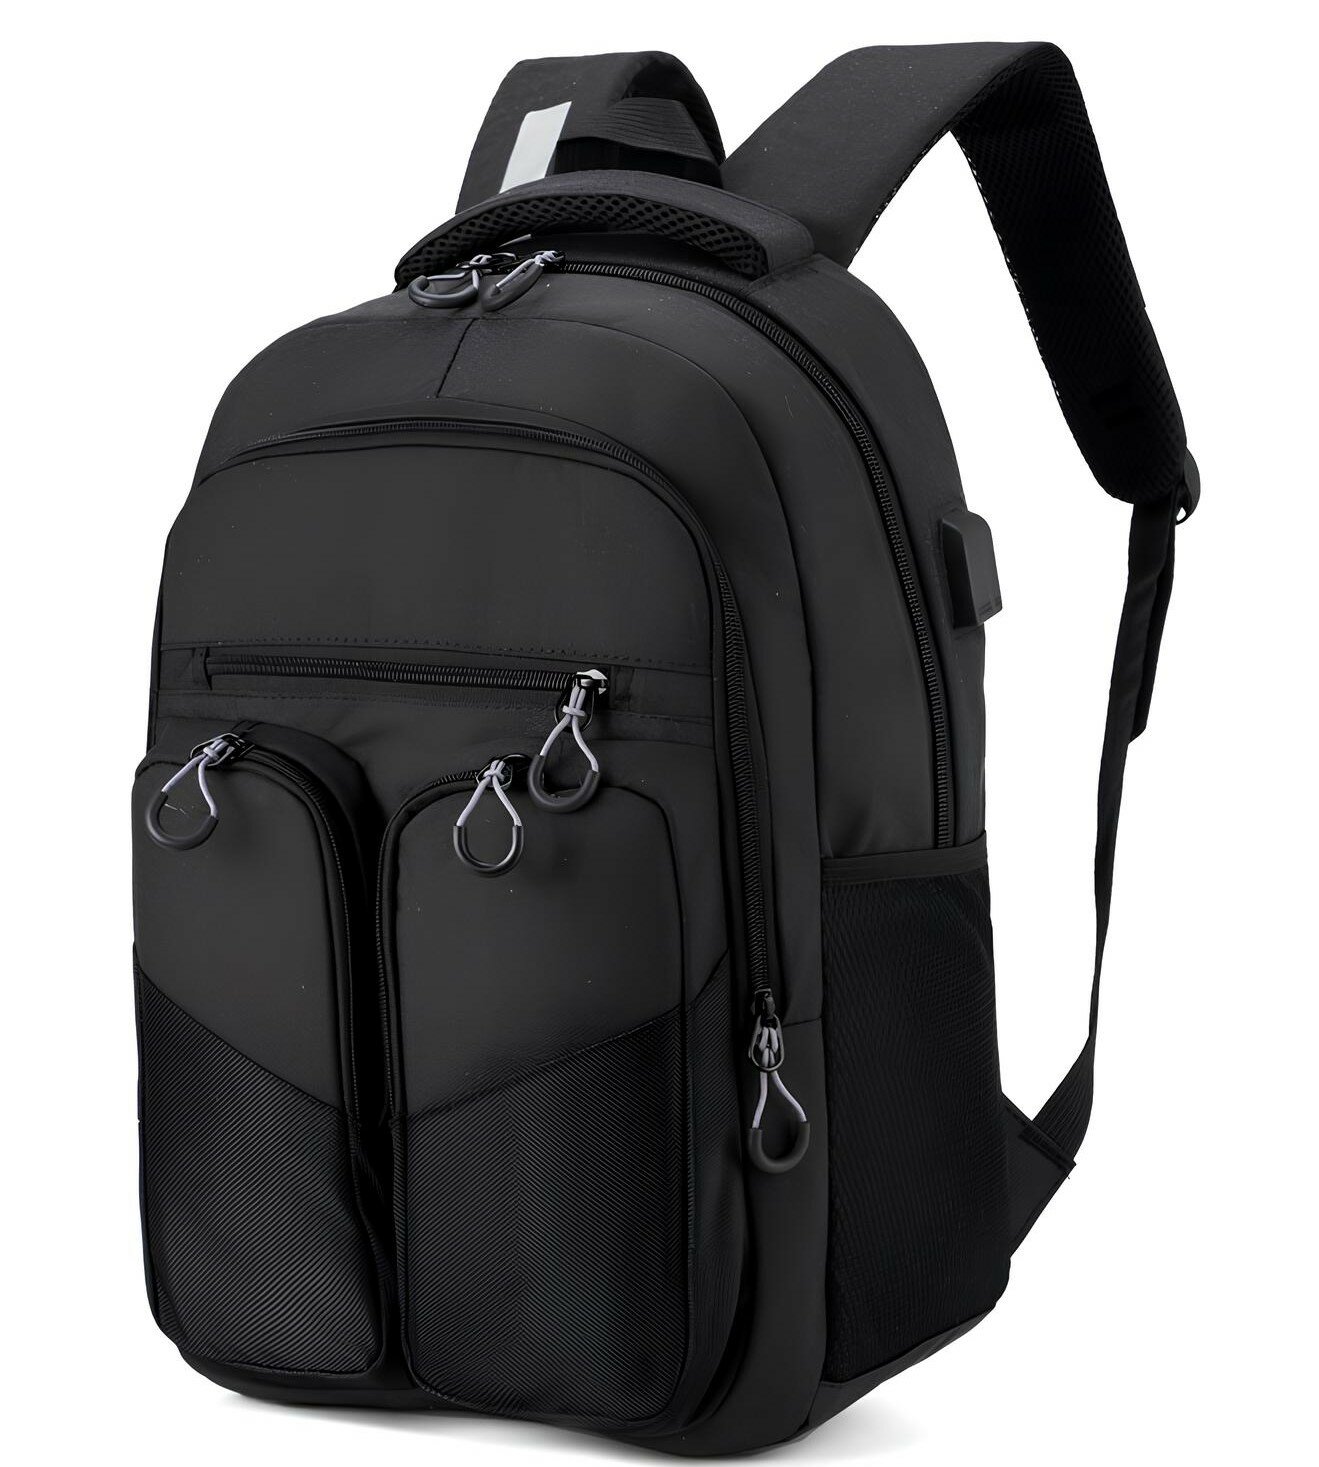 Рюкзак универсальный для города и путешествий с отделением для ноутбука, черный